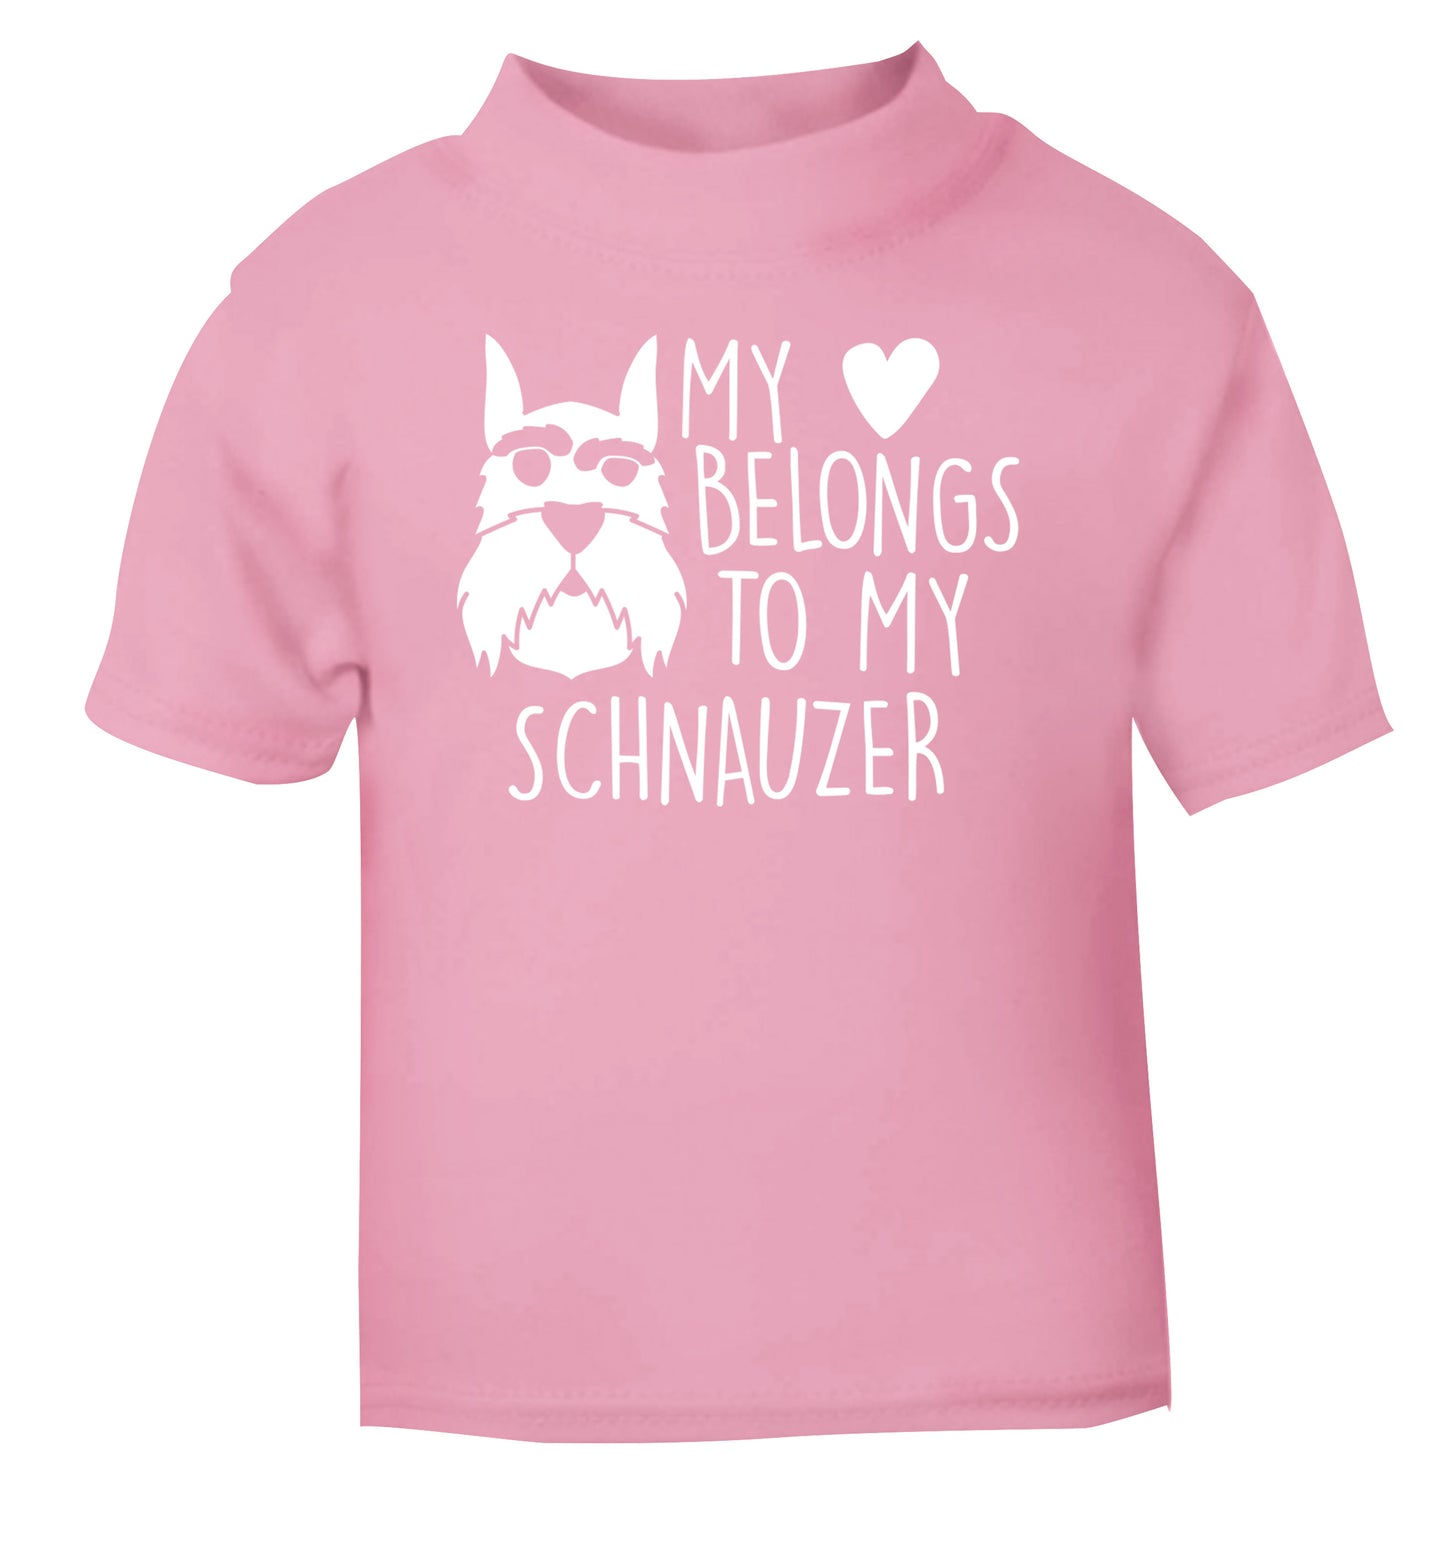 My heart belongs to my schnauzer light pink Baby Toddler Tshirt 2 Years